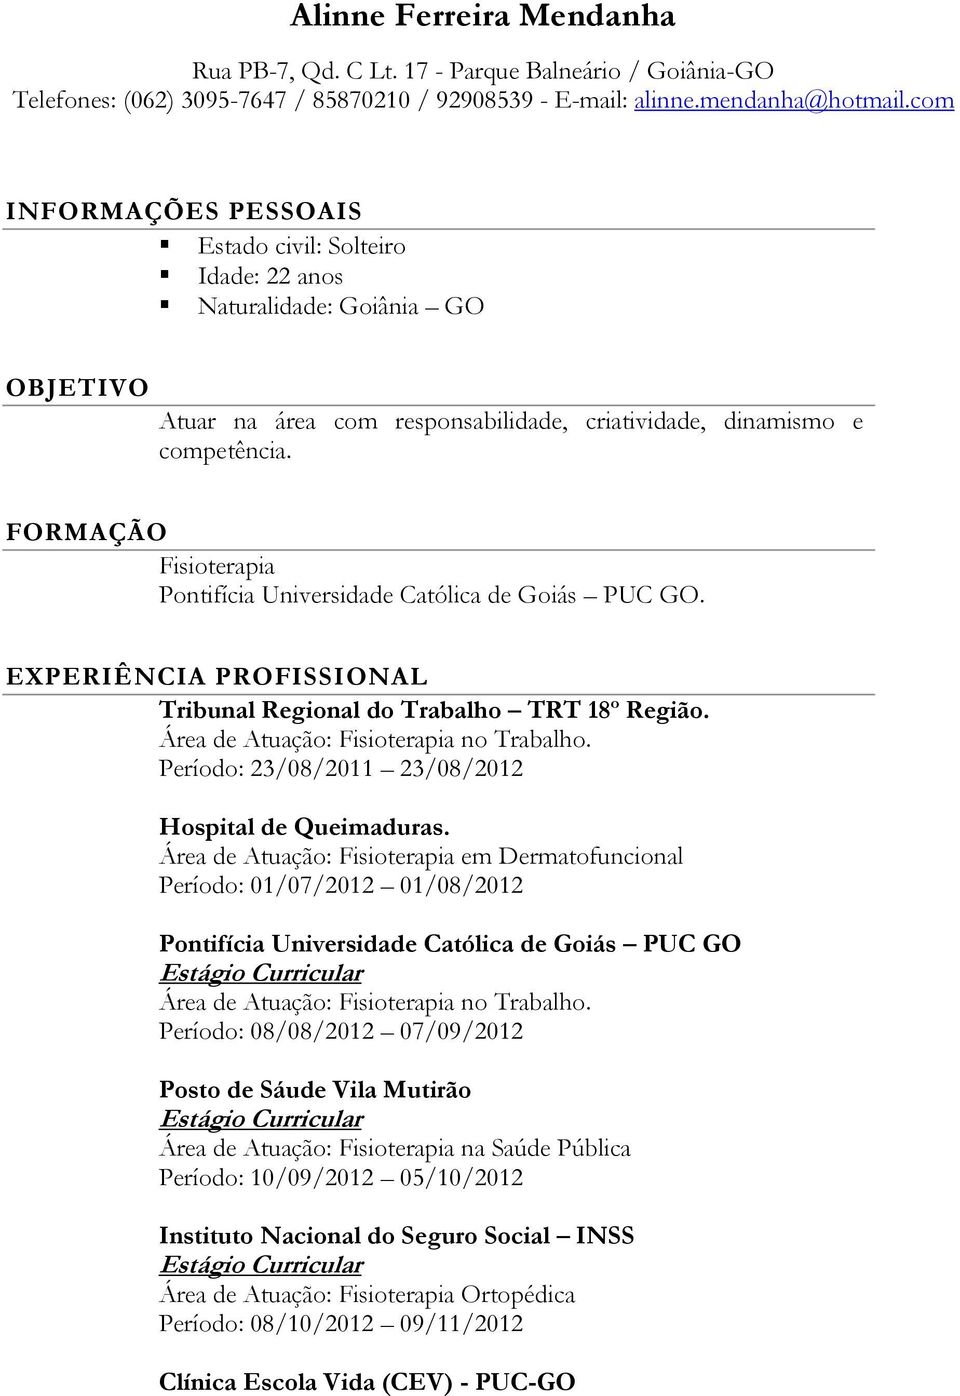 FORMAÇÃO Fisioterapia Pontifícia Universidade Católica de Goiás PUC GO. EXPERIÊNCIA PROFISSIONAL Tribunal Regional do Trabalho TRT 18º Região. Área de Atuação: Fisioterapia no Trabalho.